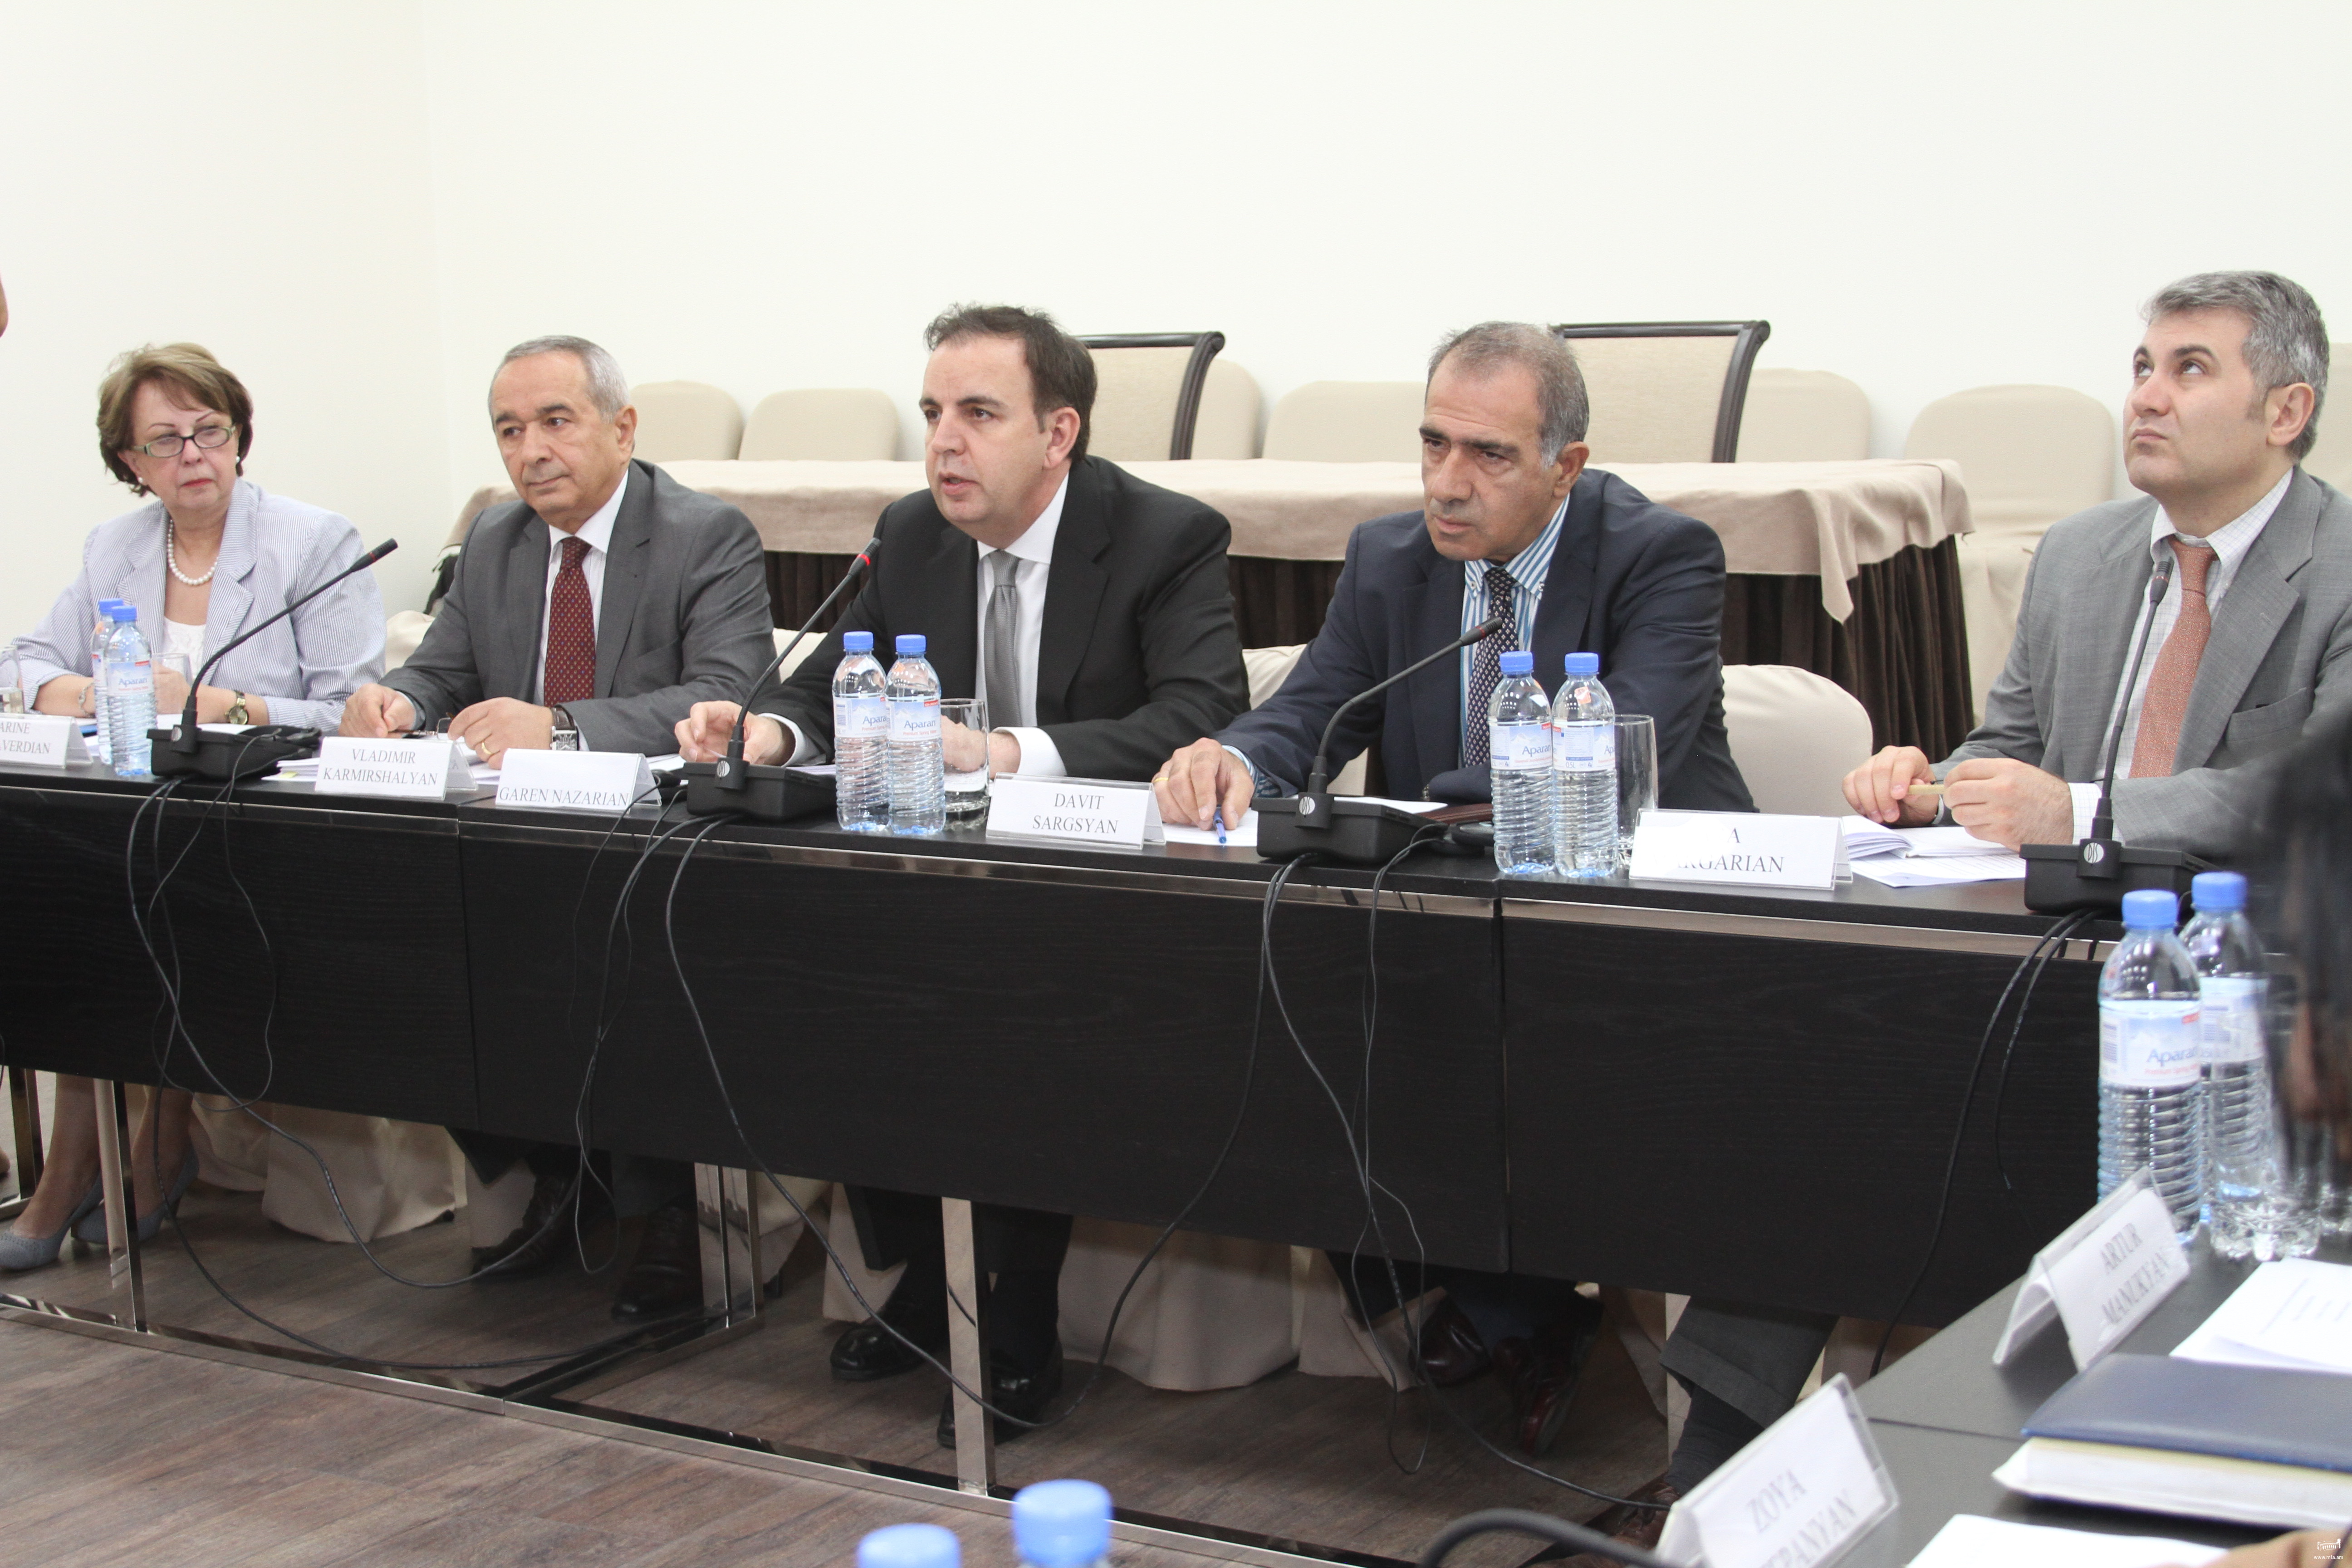 Երևանում կայացել է վիզաների դյուրացման հարցերով ՀՀ-ԵՄ համատեղ կոմիտեի երրորդ նիստը